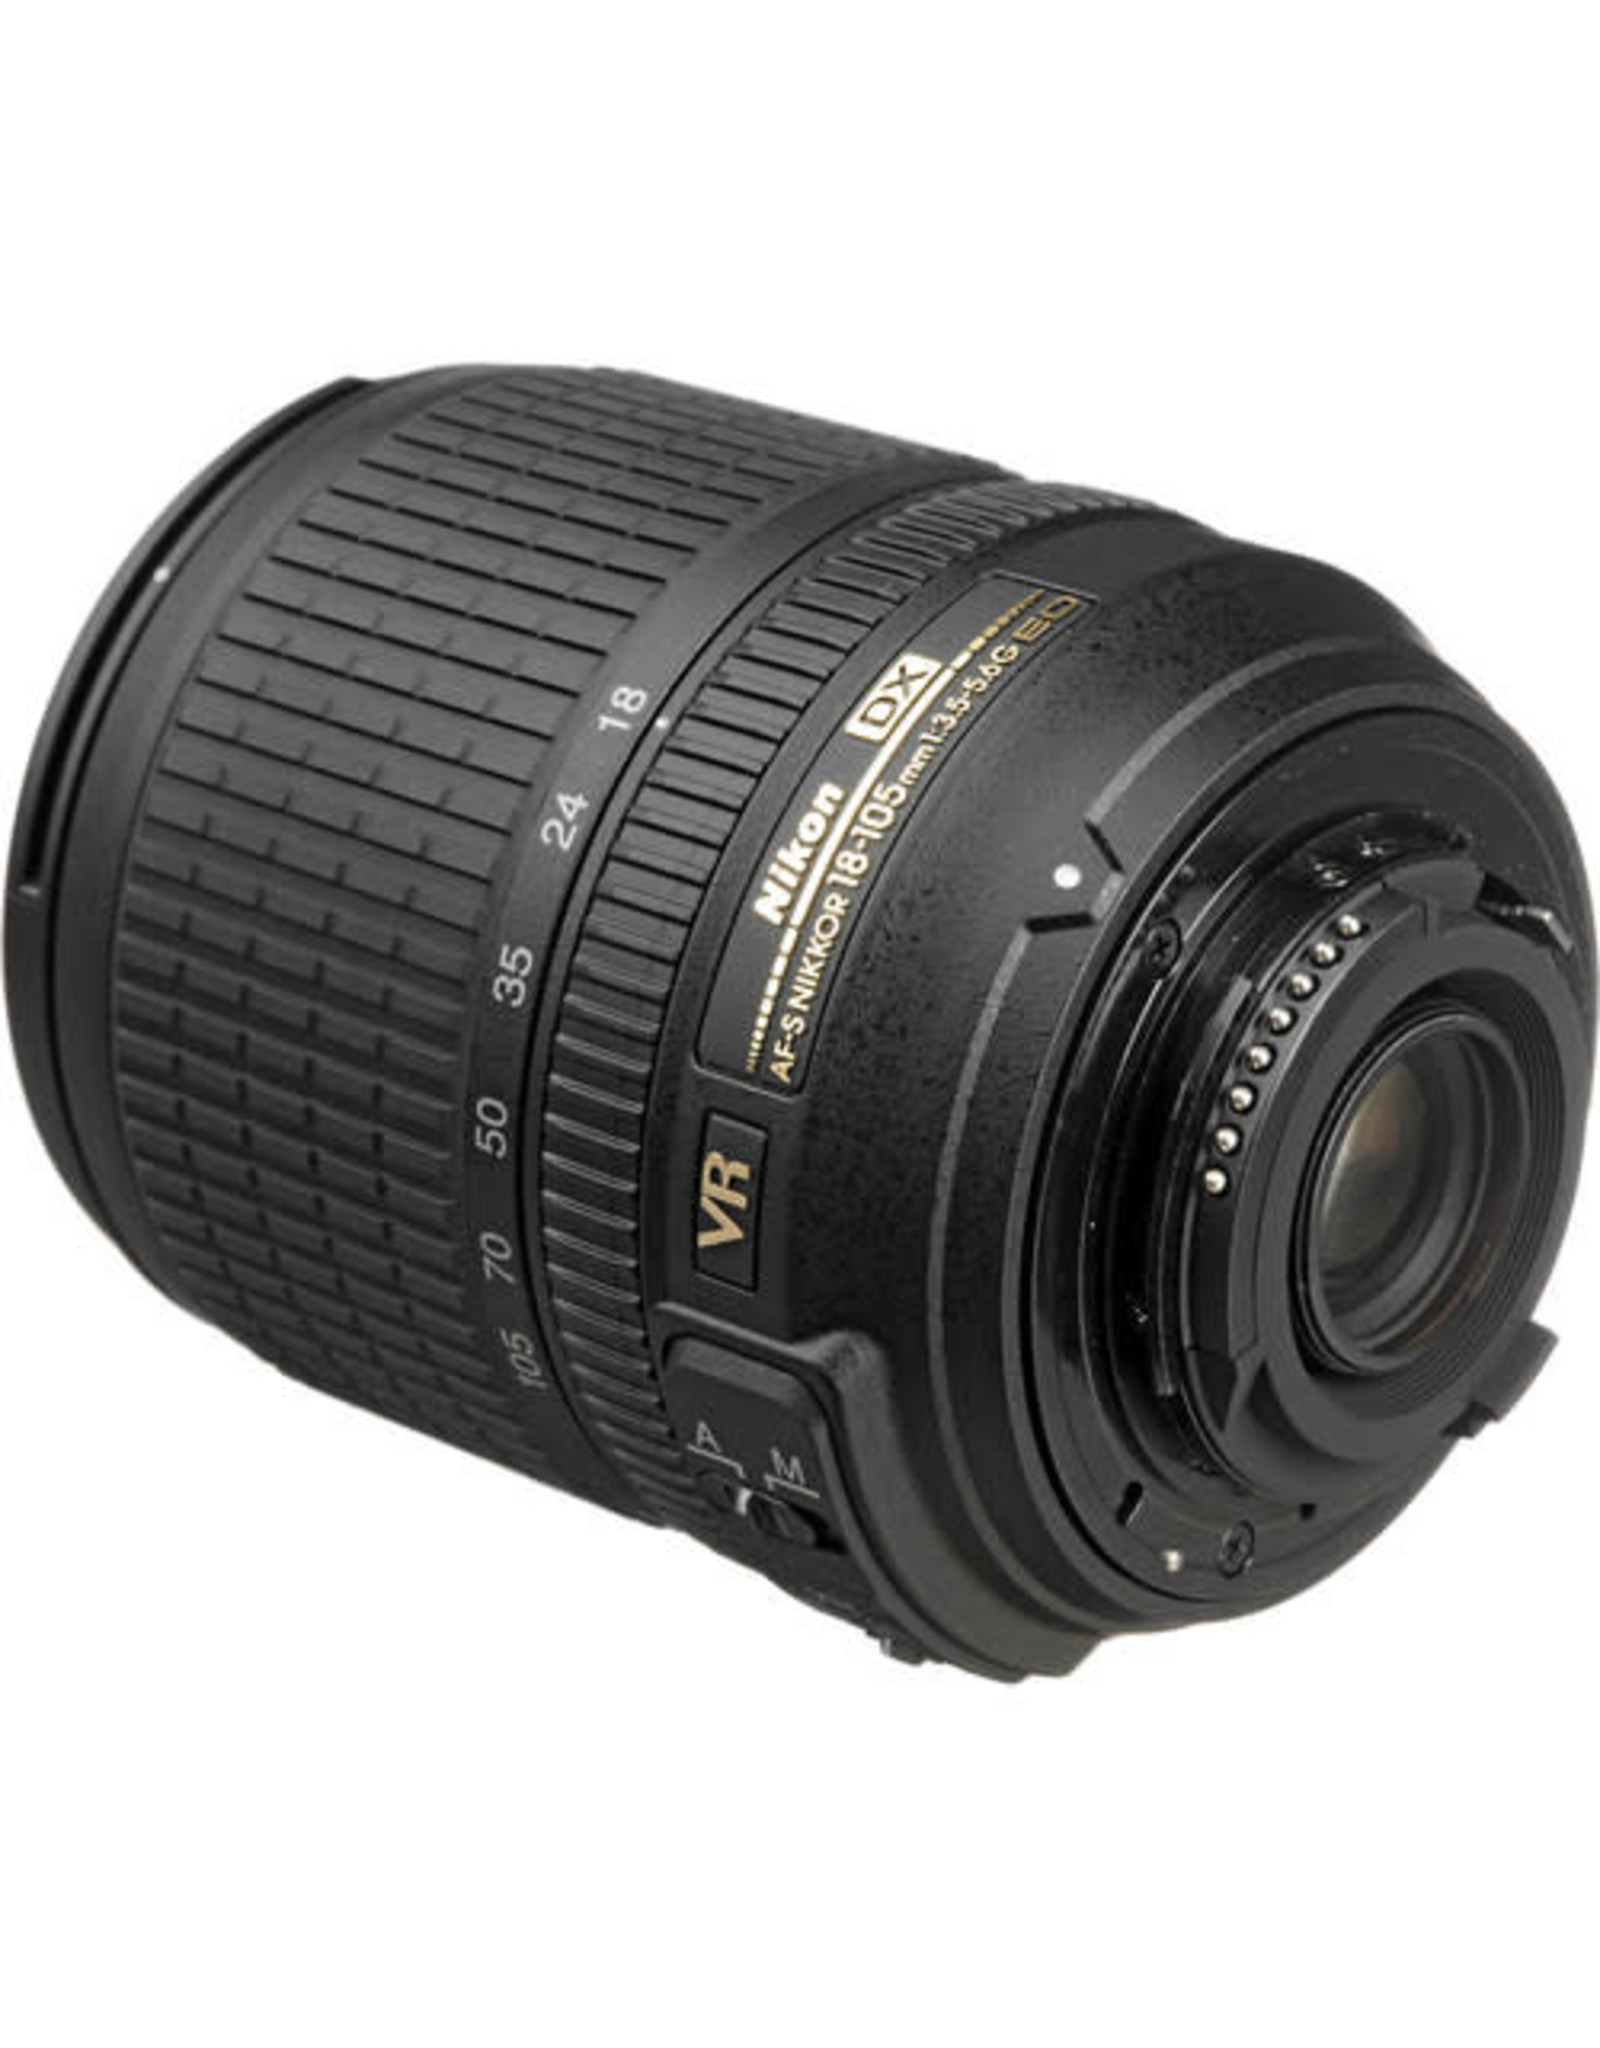 Nikon AF-S DX 18-105mm F3.5-5.6G